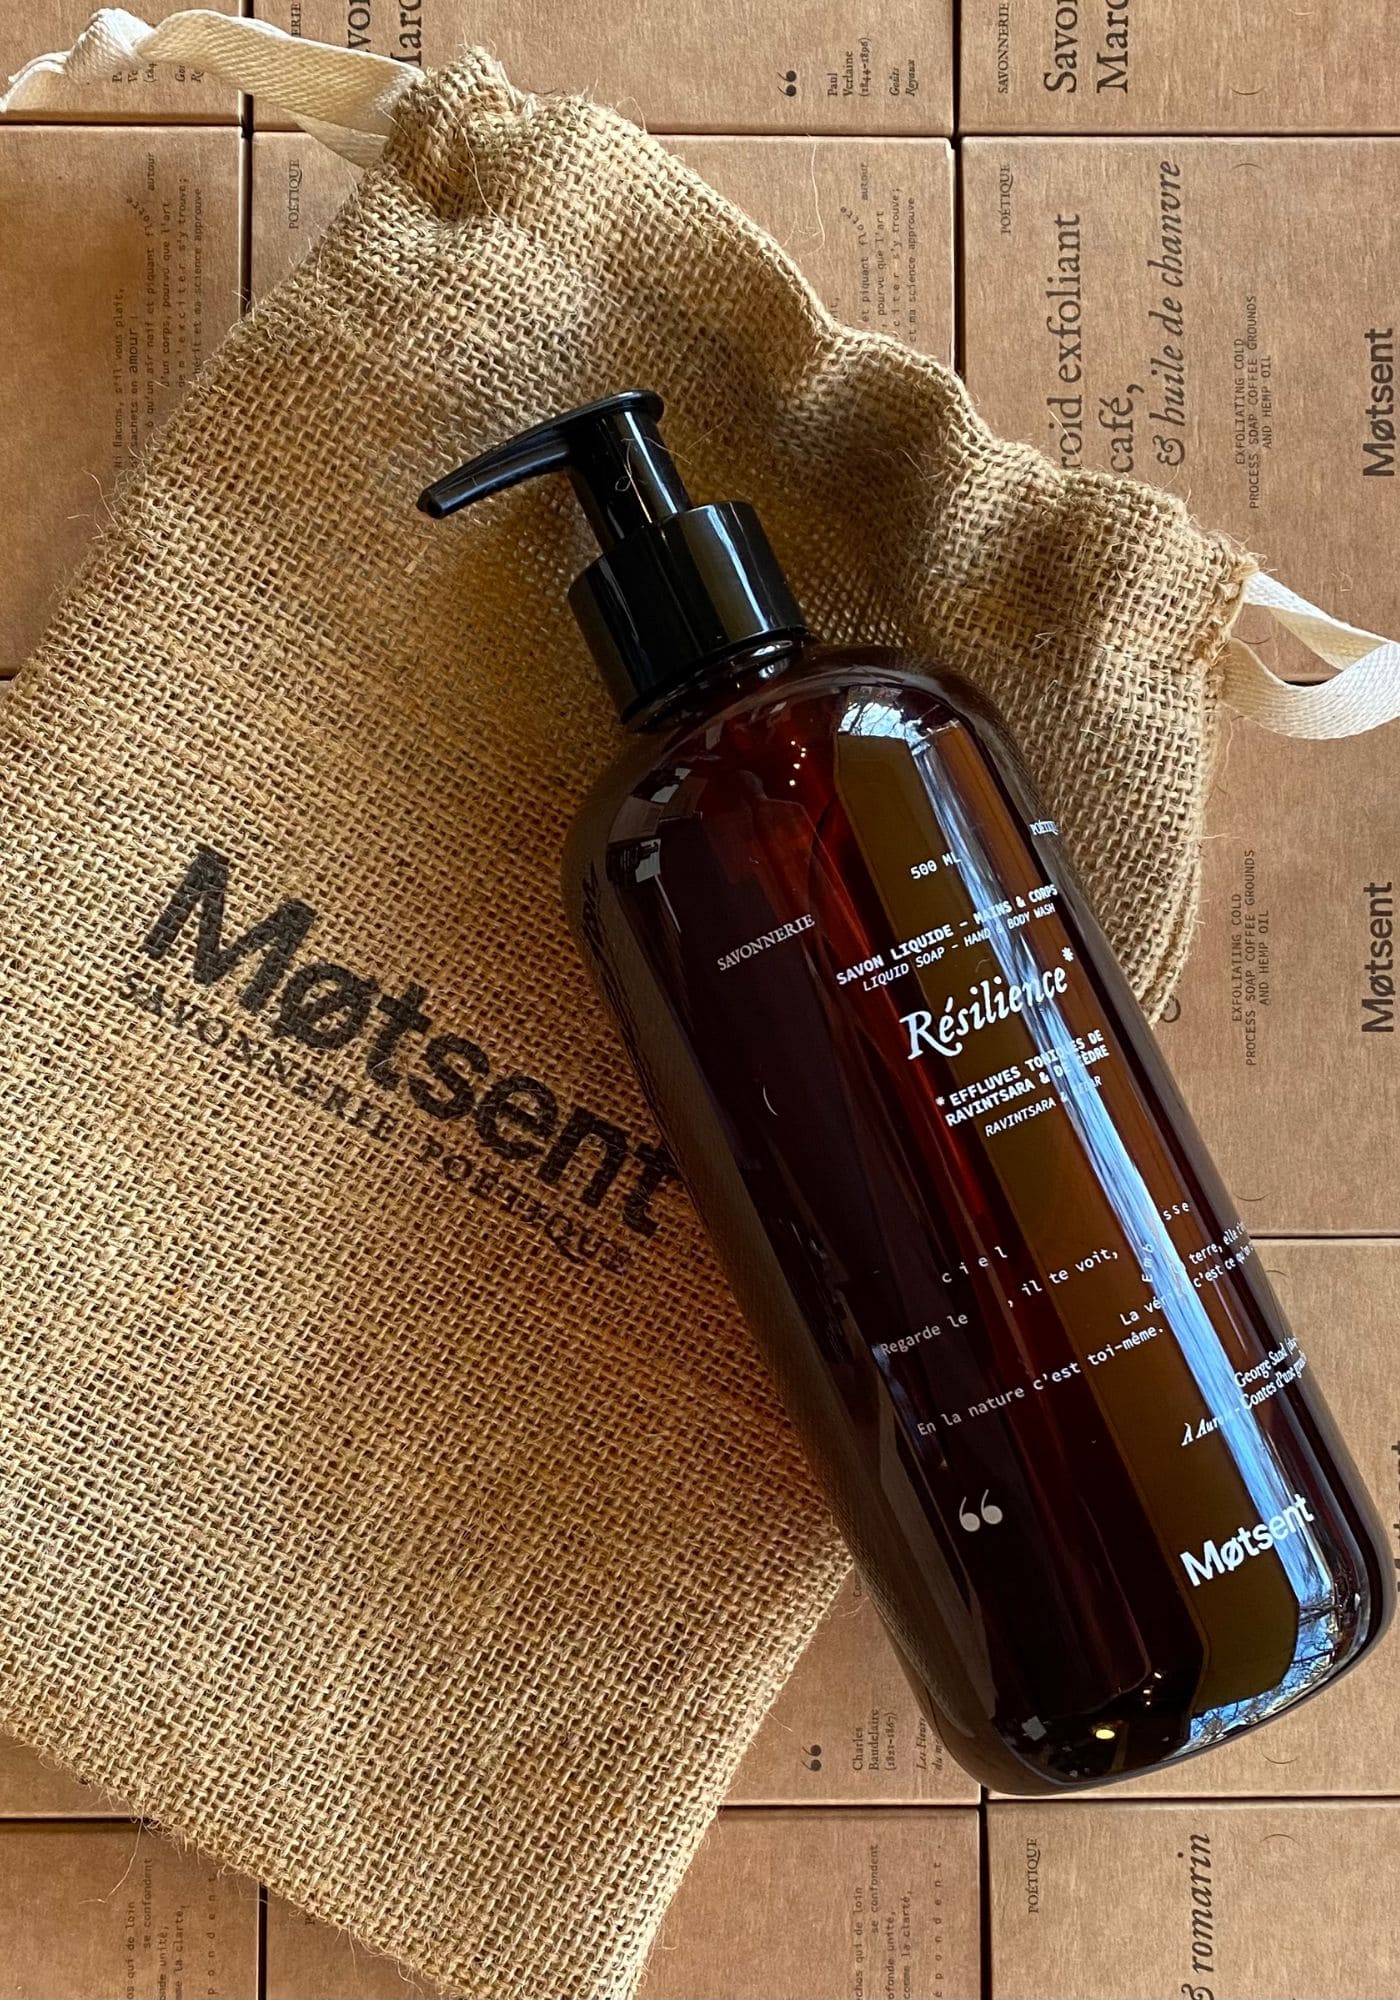 La bouteille de savon liquide Résilience de chez Motsent est sur un sac en toile de jute